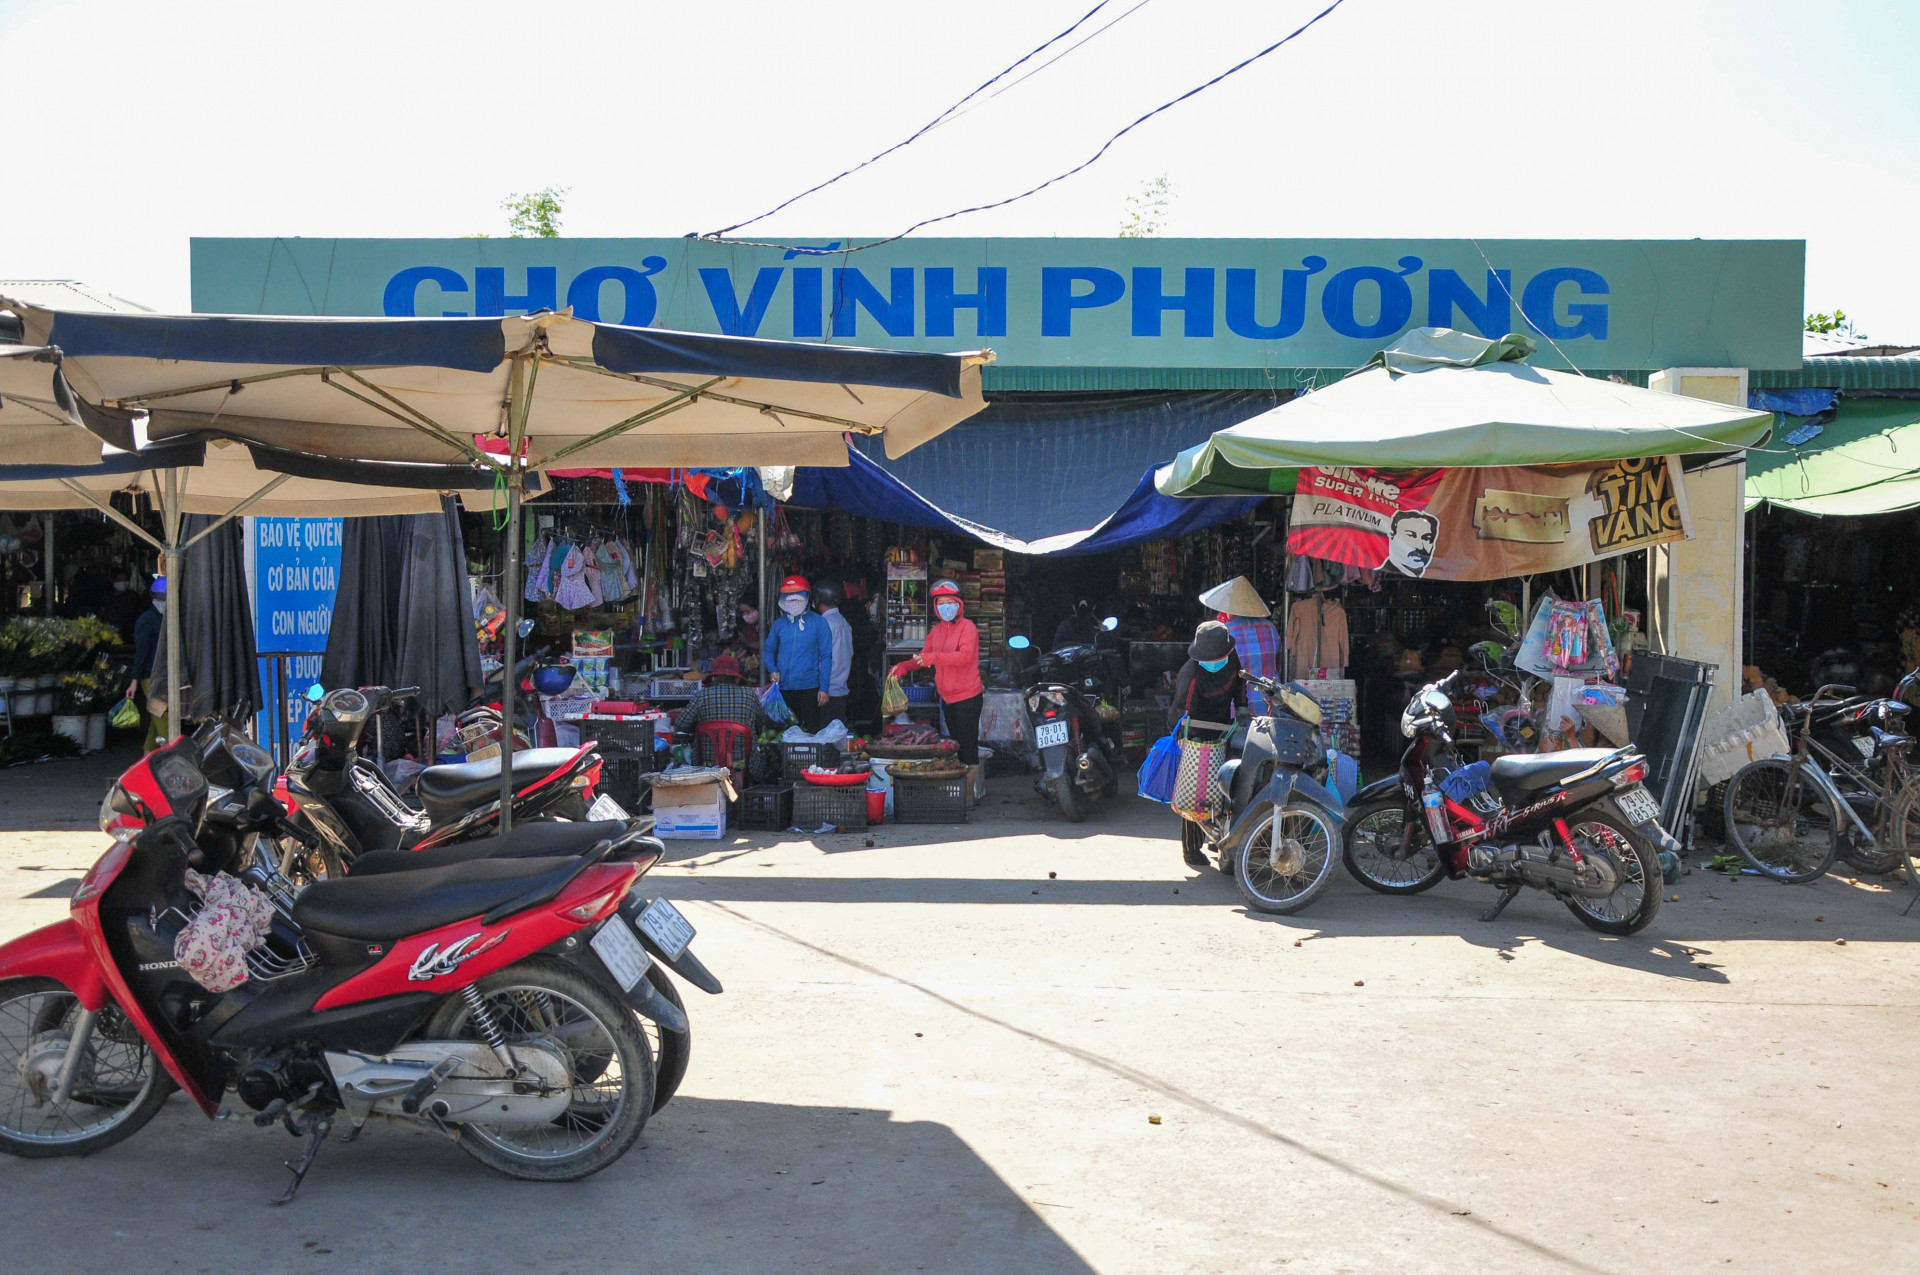 Chợ Vĩnh Phương thưa thớt người đến mua bán hơn thường ngày.